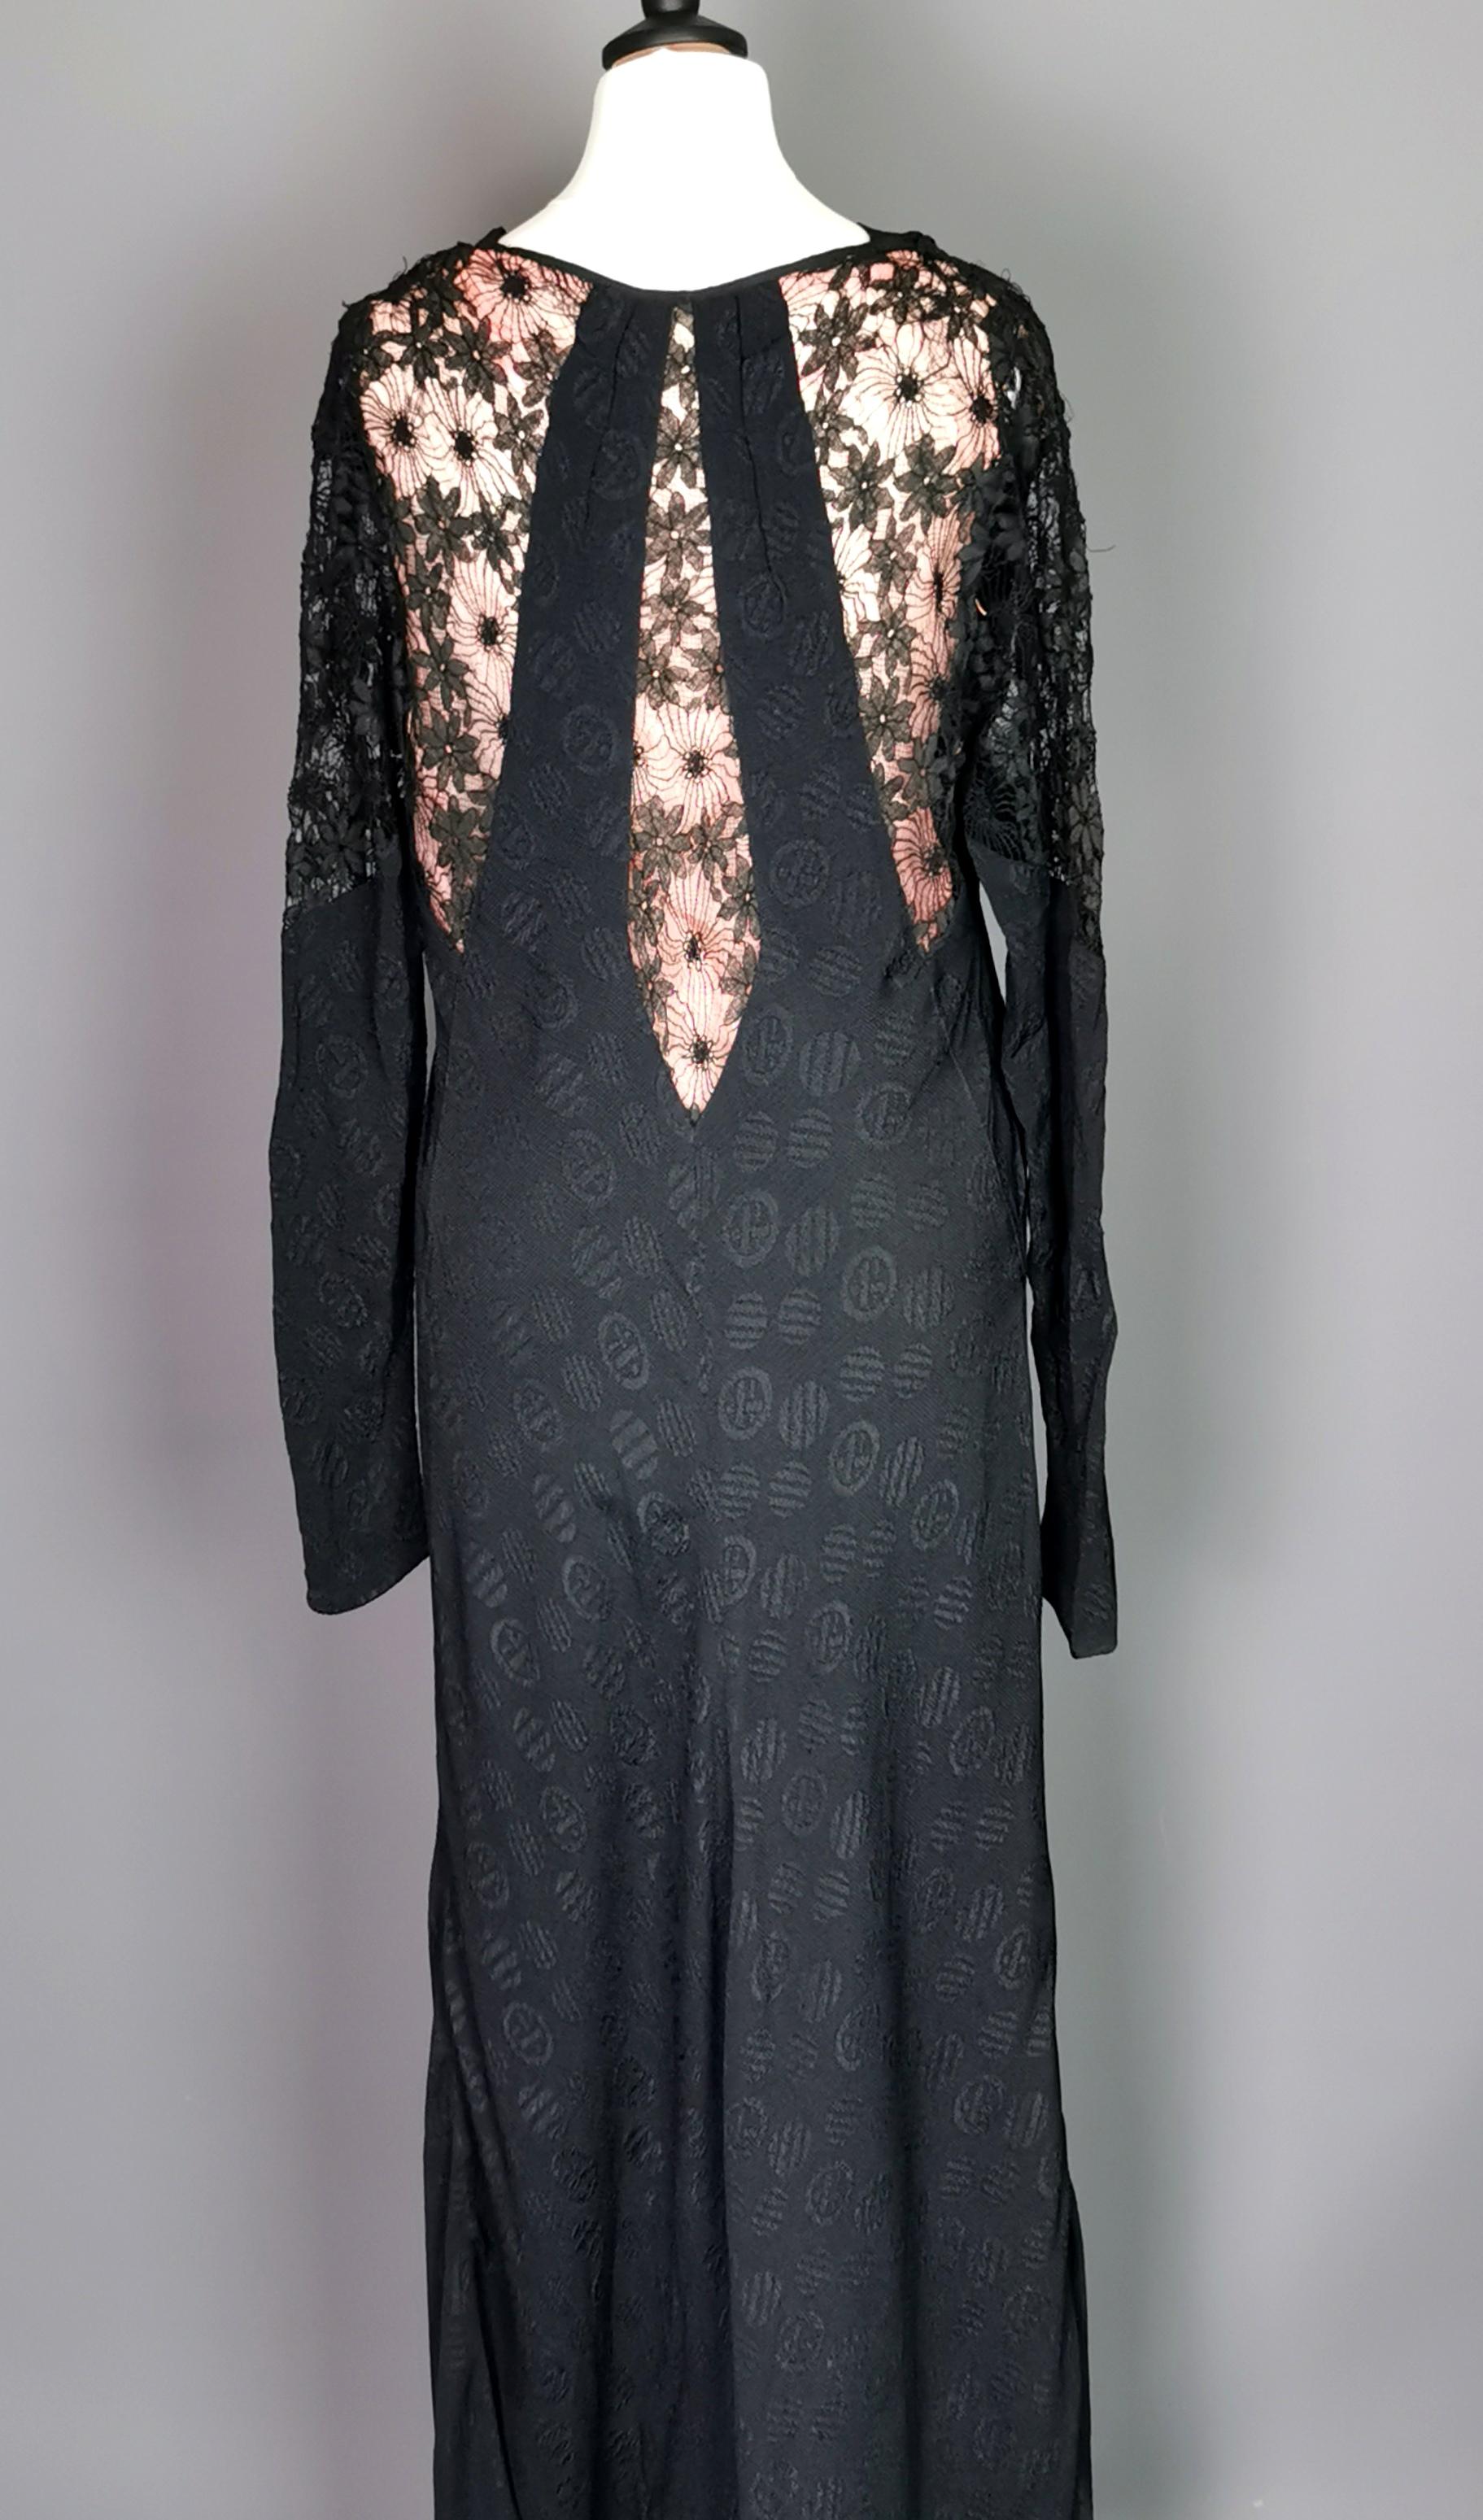 Ein wunderschönes, verführerisches und vampirhaftes Vintage-Kleid aus schwarzer Viskose aus den 1930er Jahren mit Spitzendetails und einem rosa Rücken.

Ein langärmeliges Kleid mit gerolltem Halsausschnitt, das in der Taille eingeschnürt ist, mit